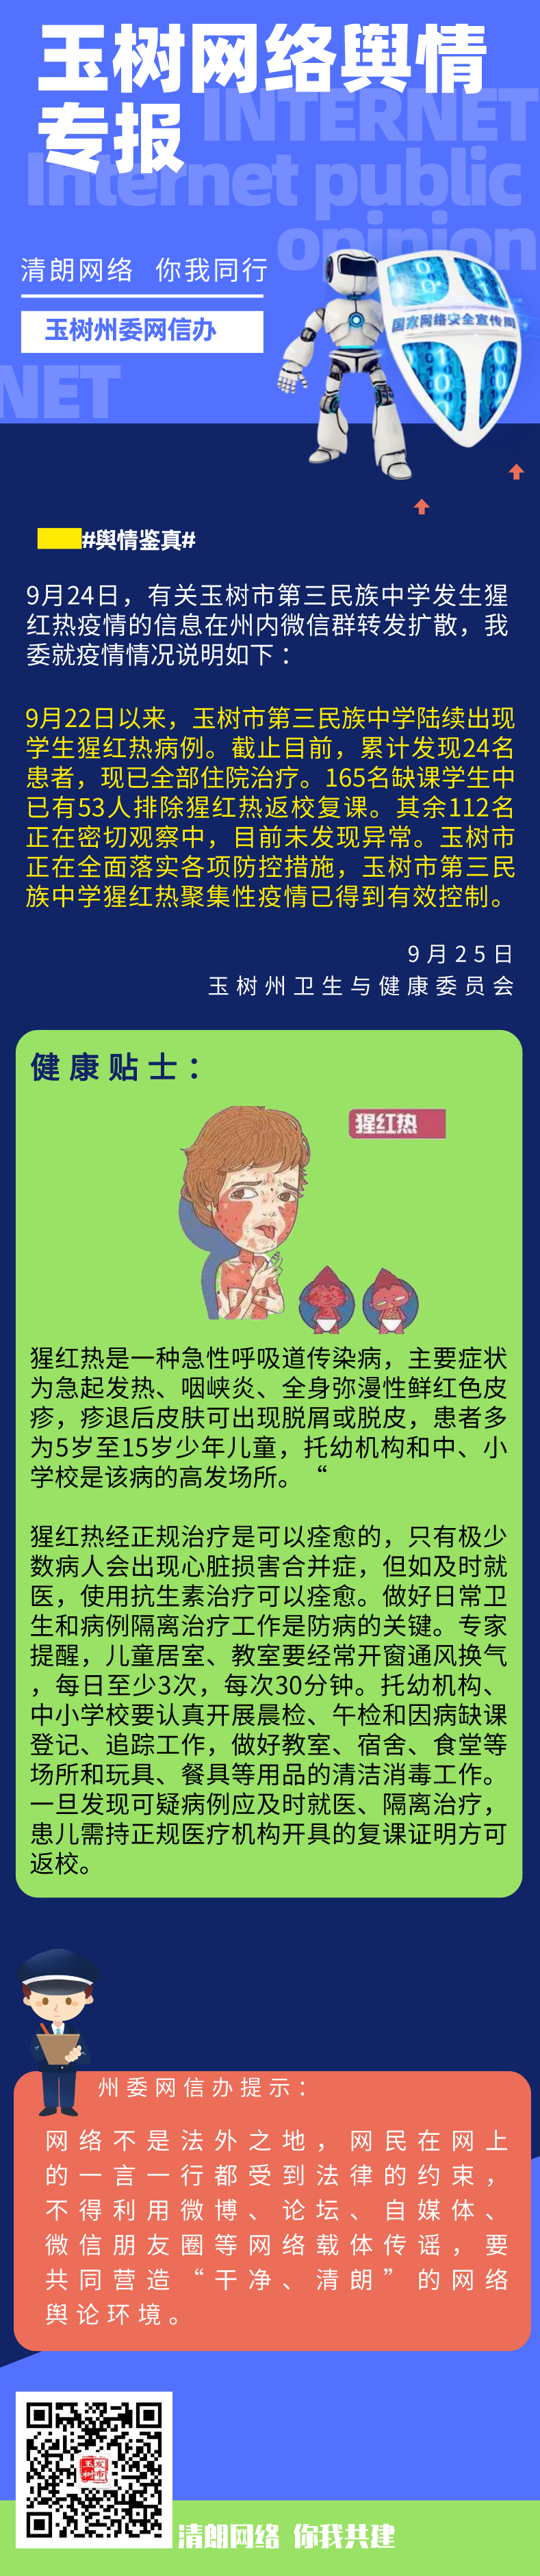 青海玉树一学校发生猩红热疫情,24人住院治疗